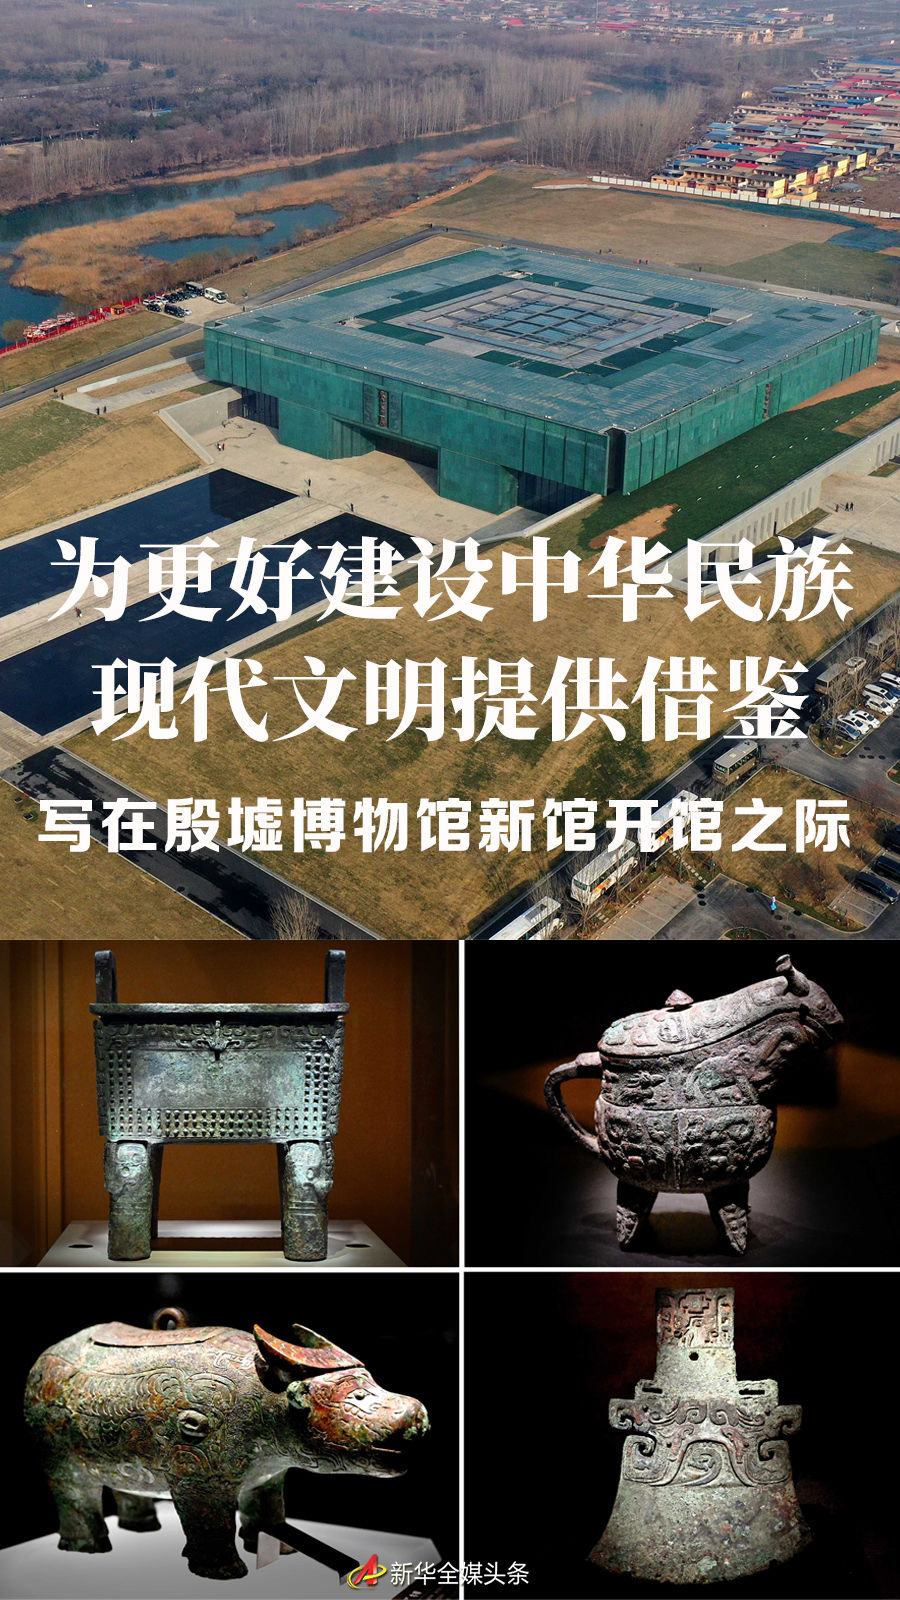 为更好建设中华民族现代文明提供借鉴——写在殷墟博物馆新馆开馆之际